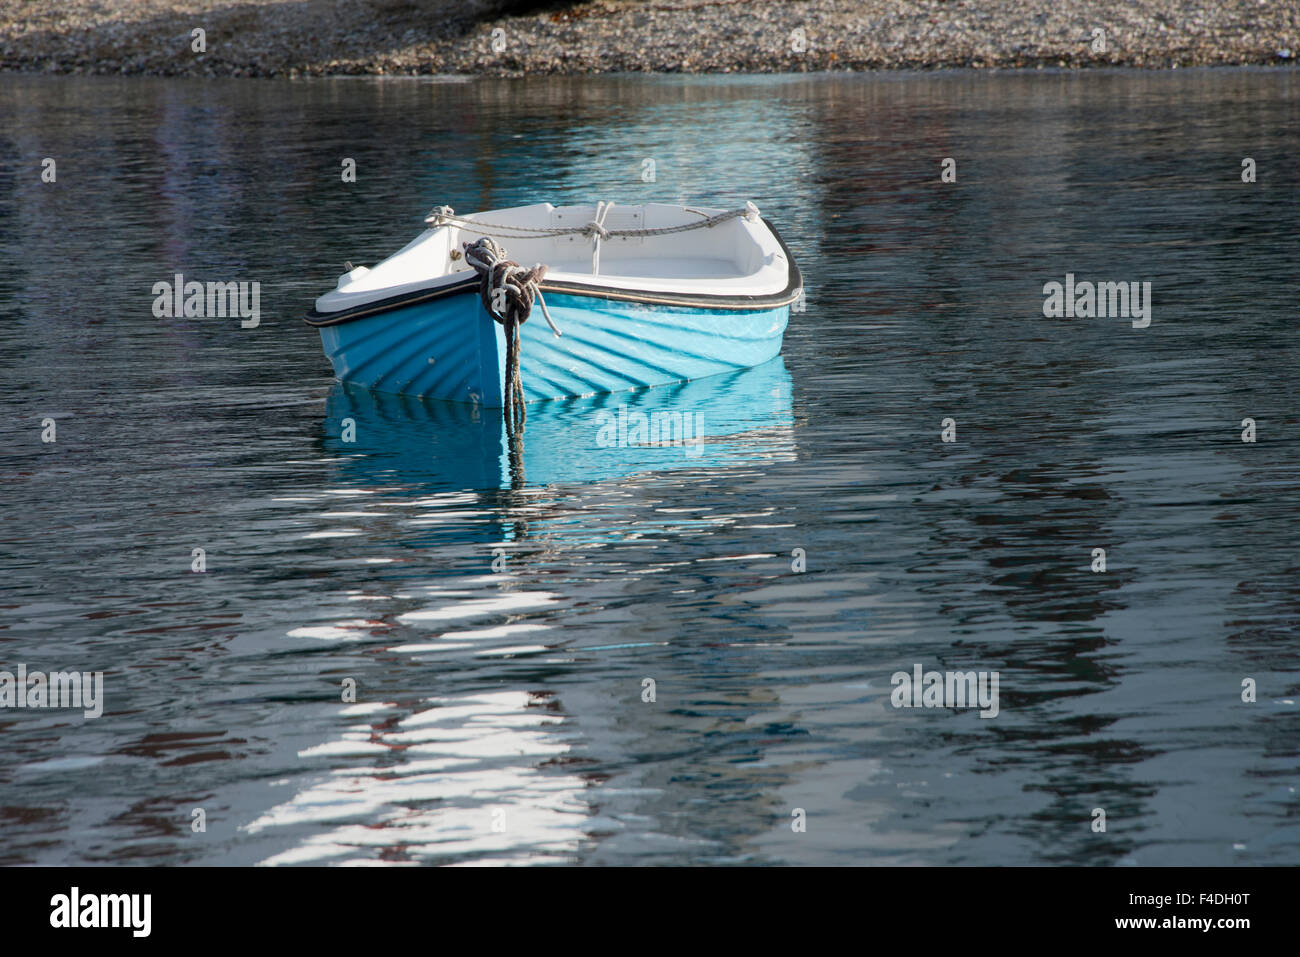 Grèce, les Cyclades, Mykonos, Hora. Bateau de pêche bleu avec réflexion. Tailles disponibles (grand format). Banque D'Images